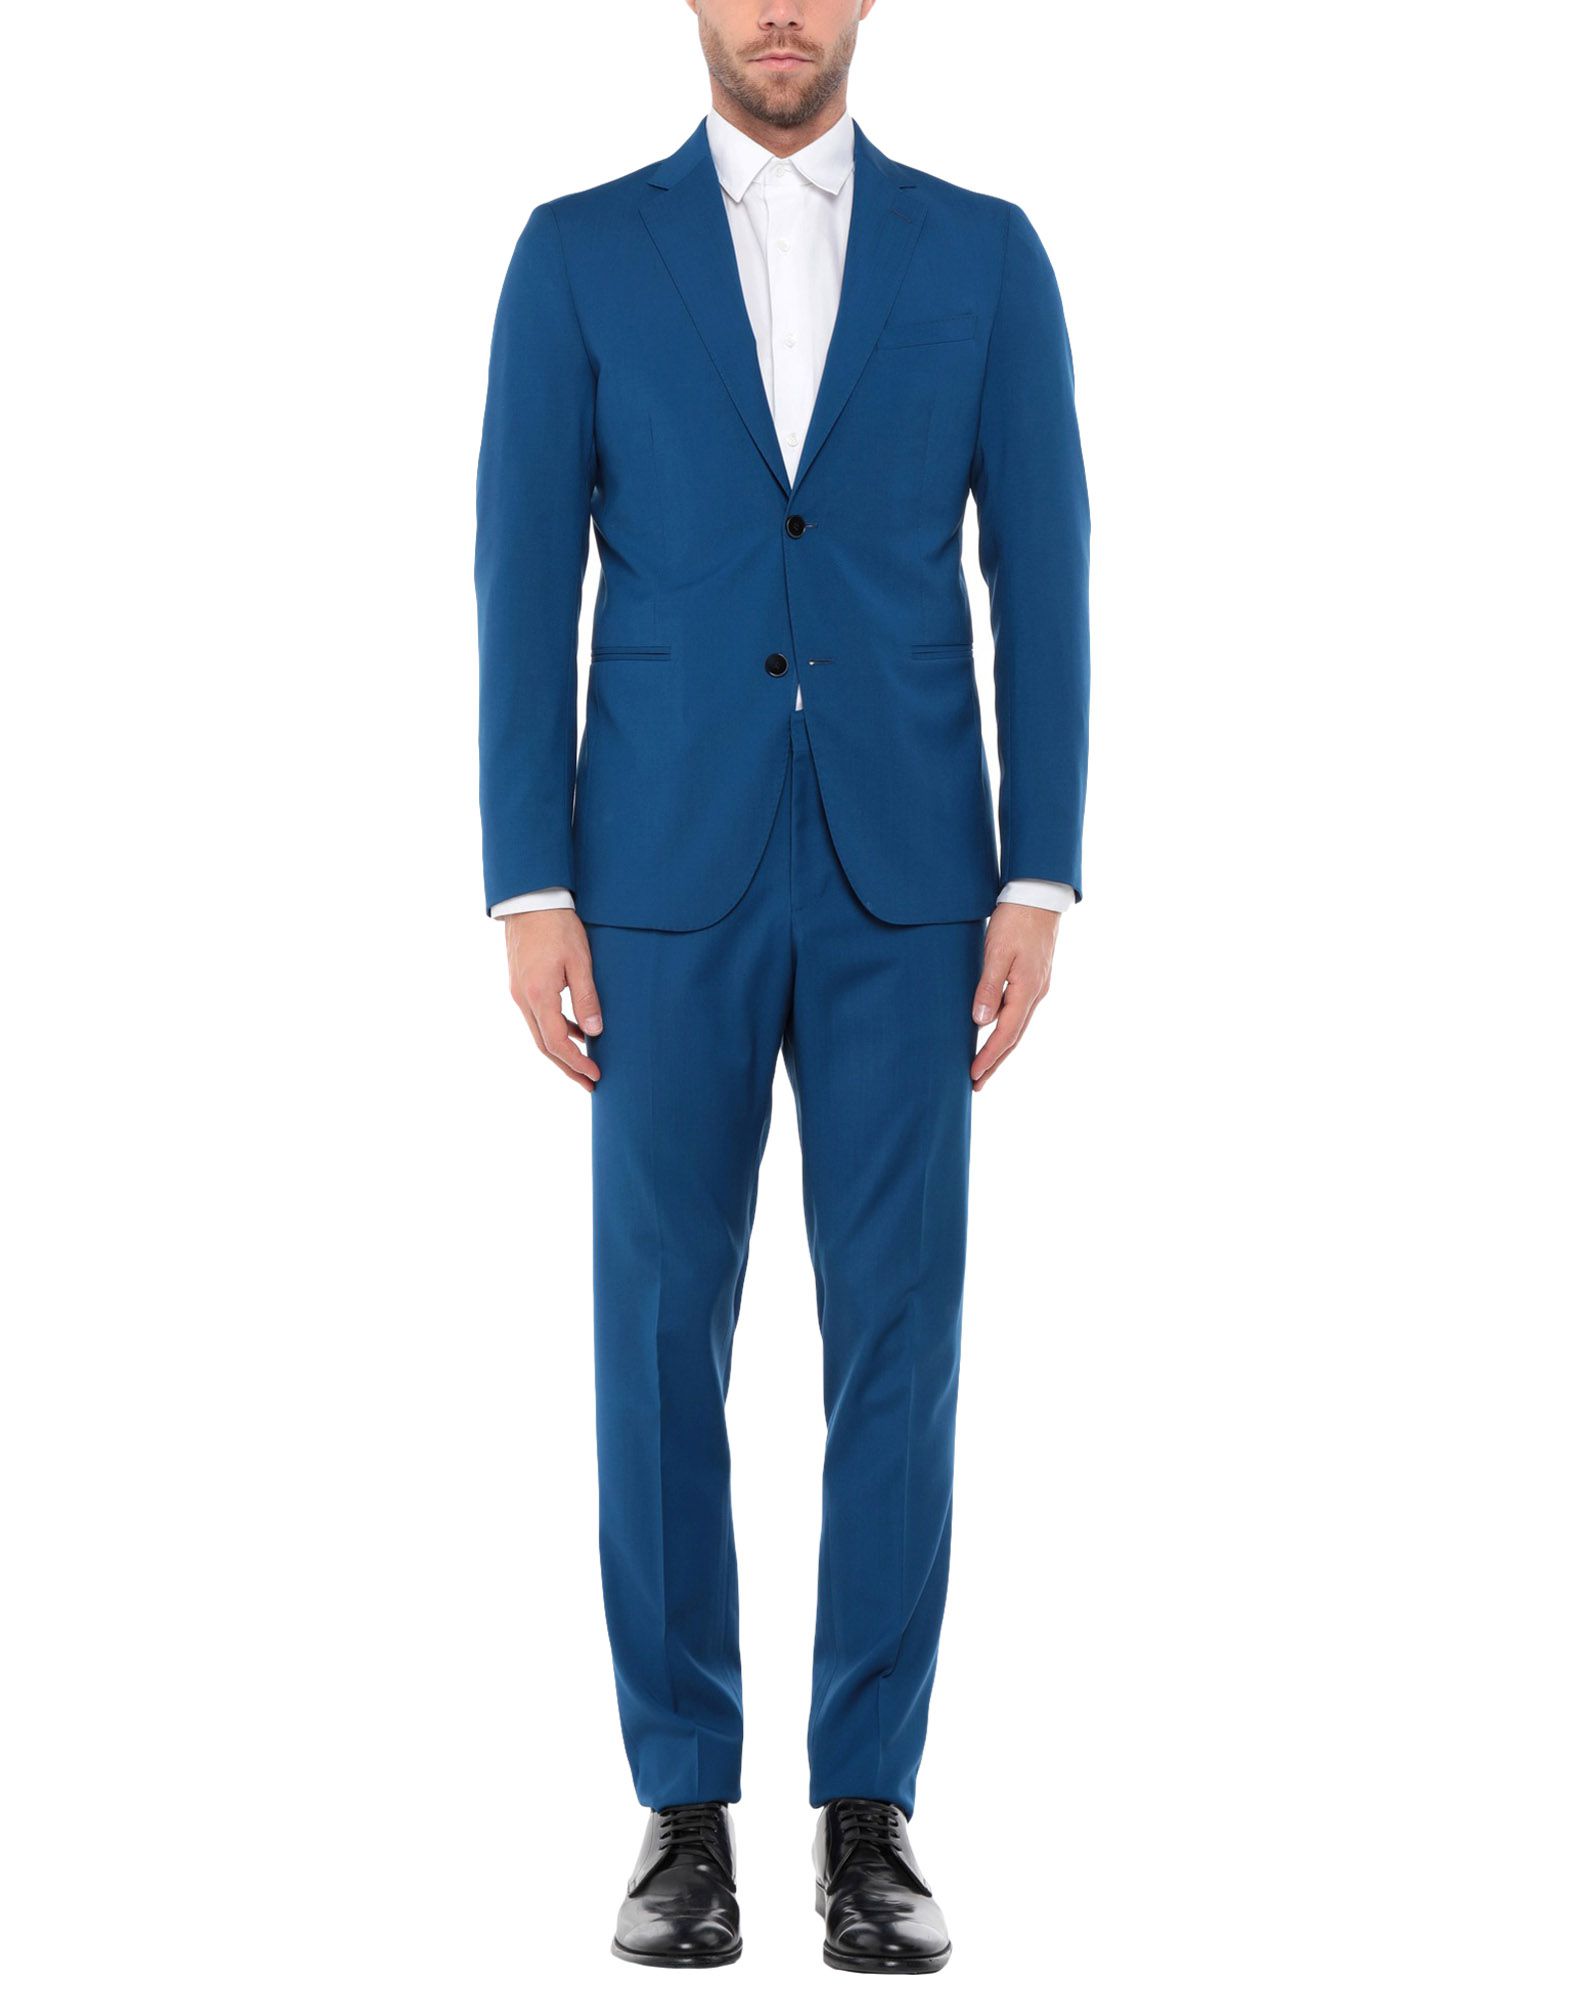 《送料無料》0909 FATTO IN ITALIA メンズ スーツ ブルー 50 ウール 100%